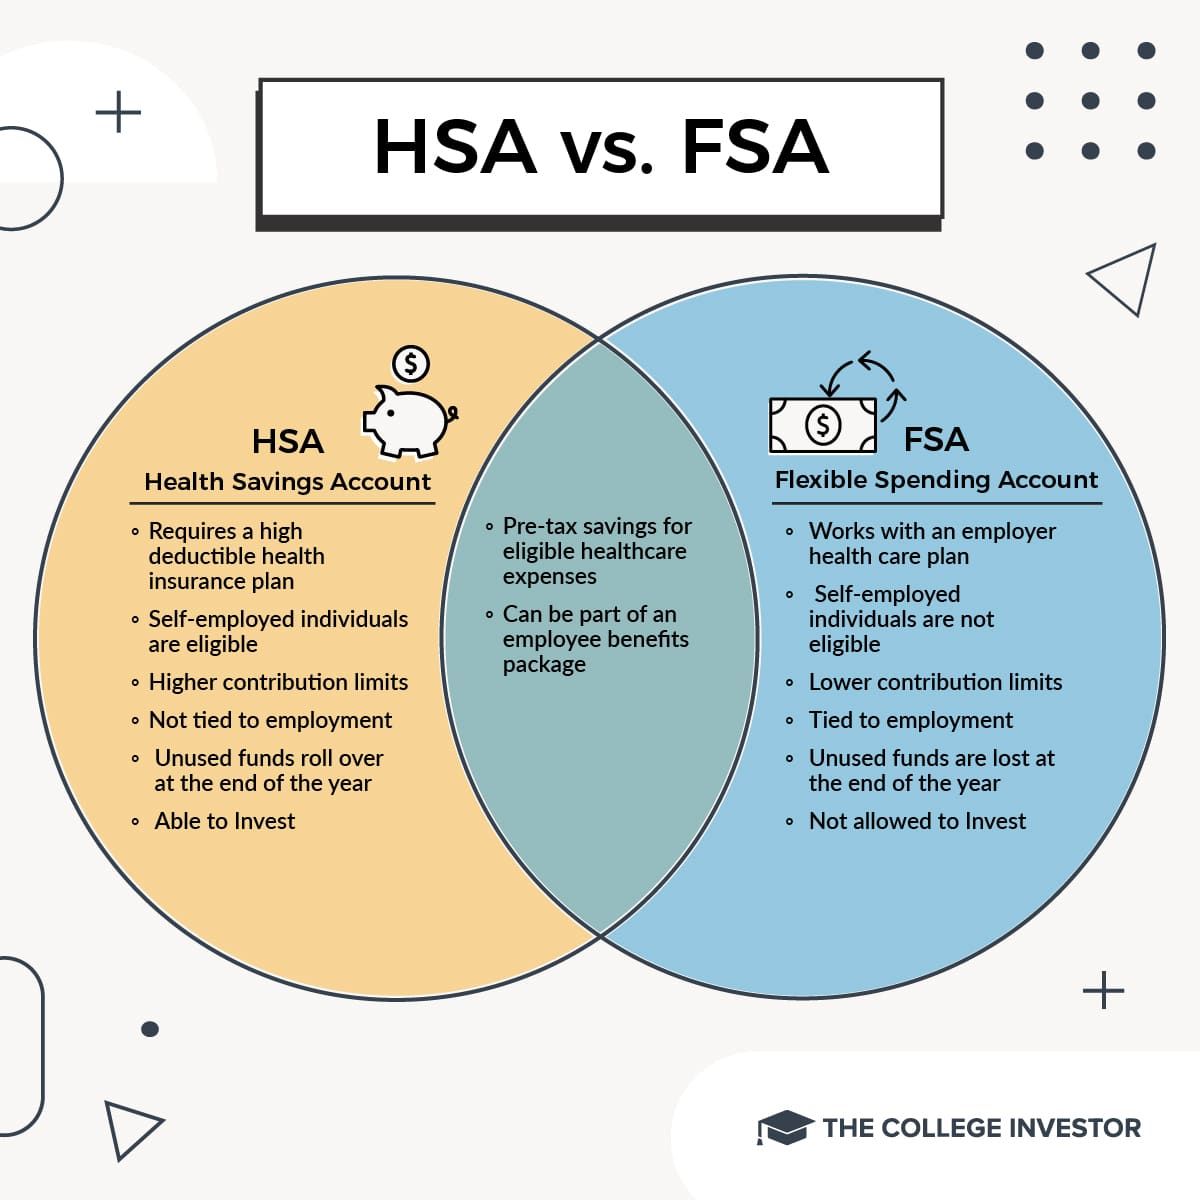 HSA vs. FSA infographic